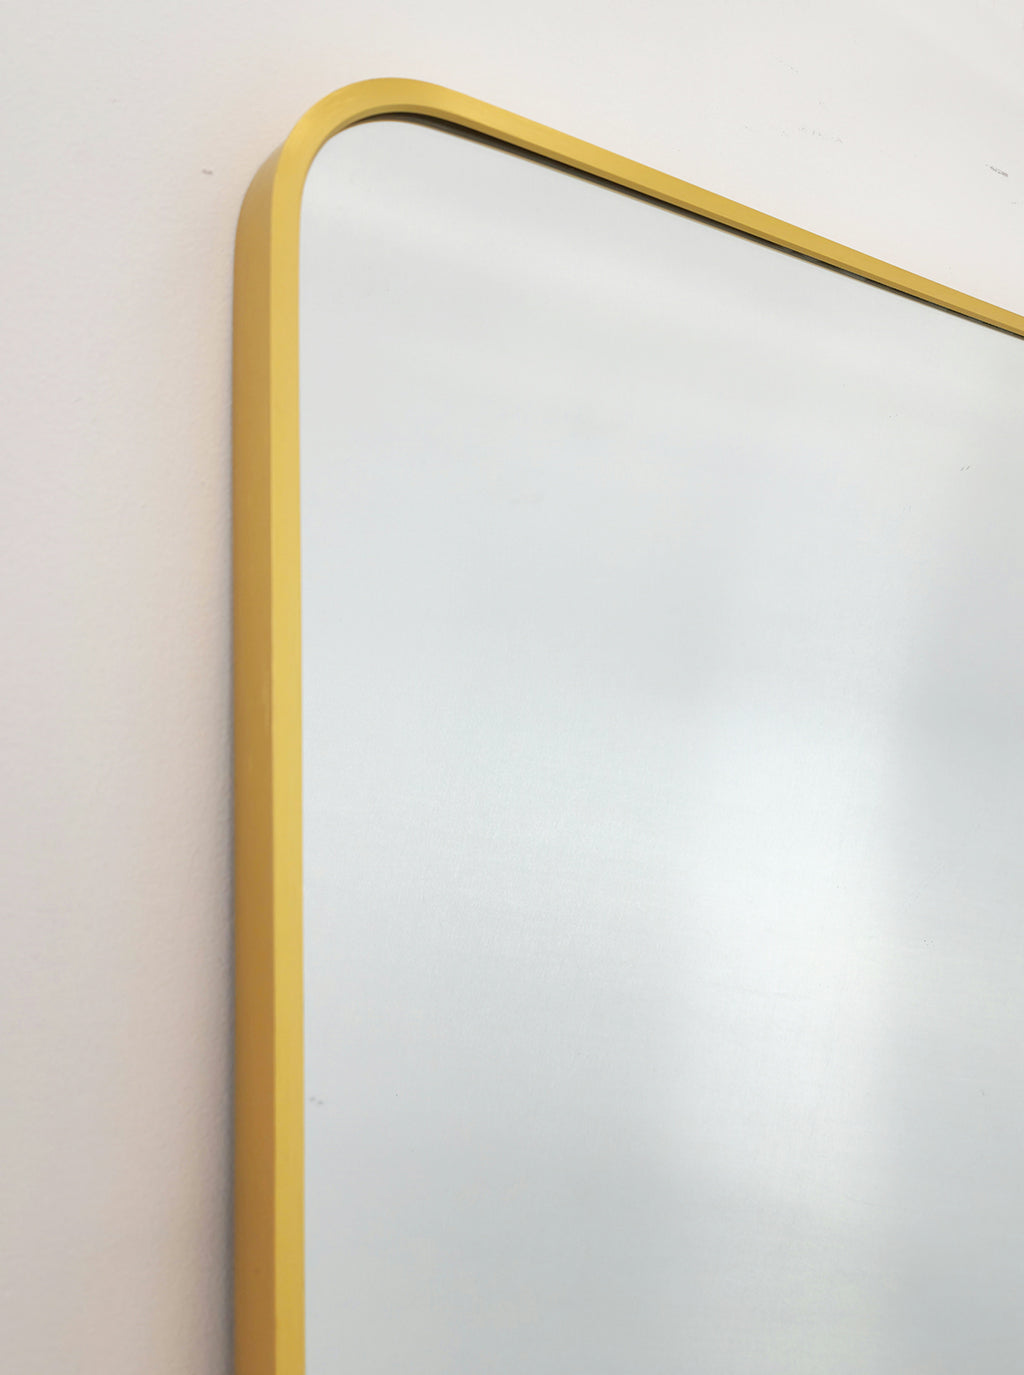 Gold Metal Rectangle Mirror - Medium 80Cm X 170Cm